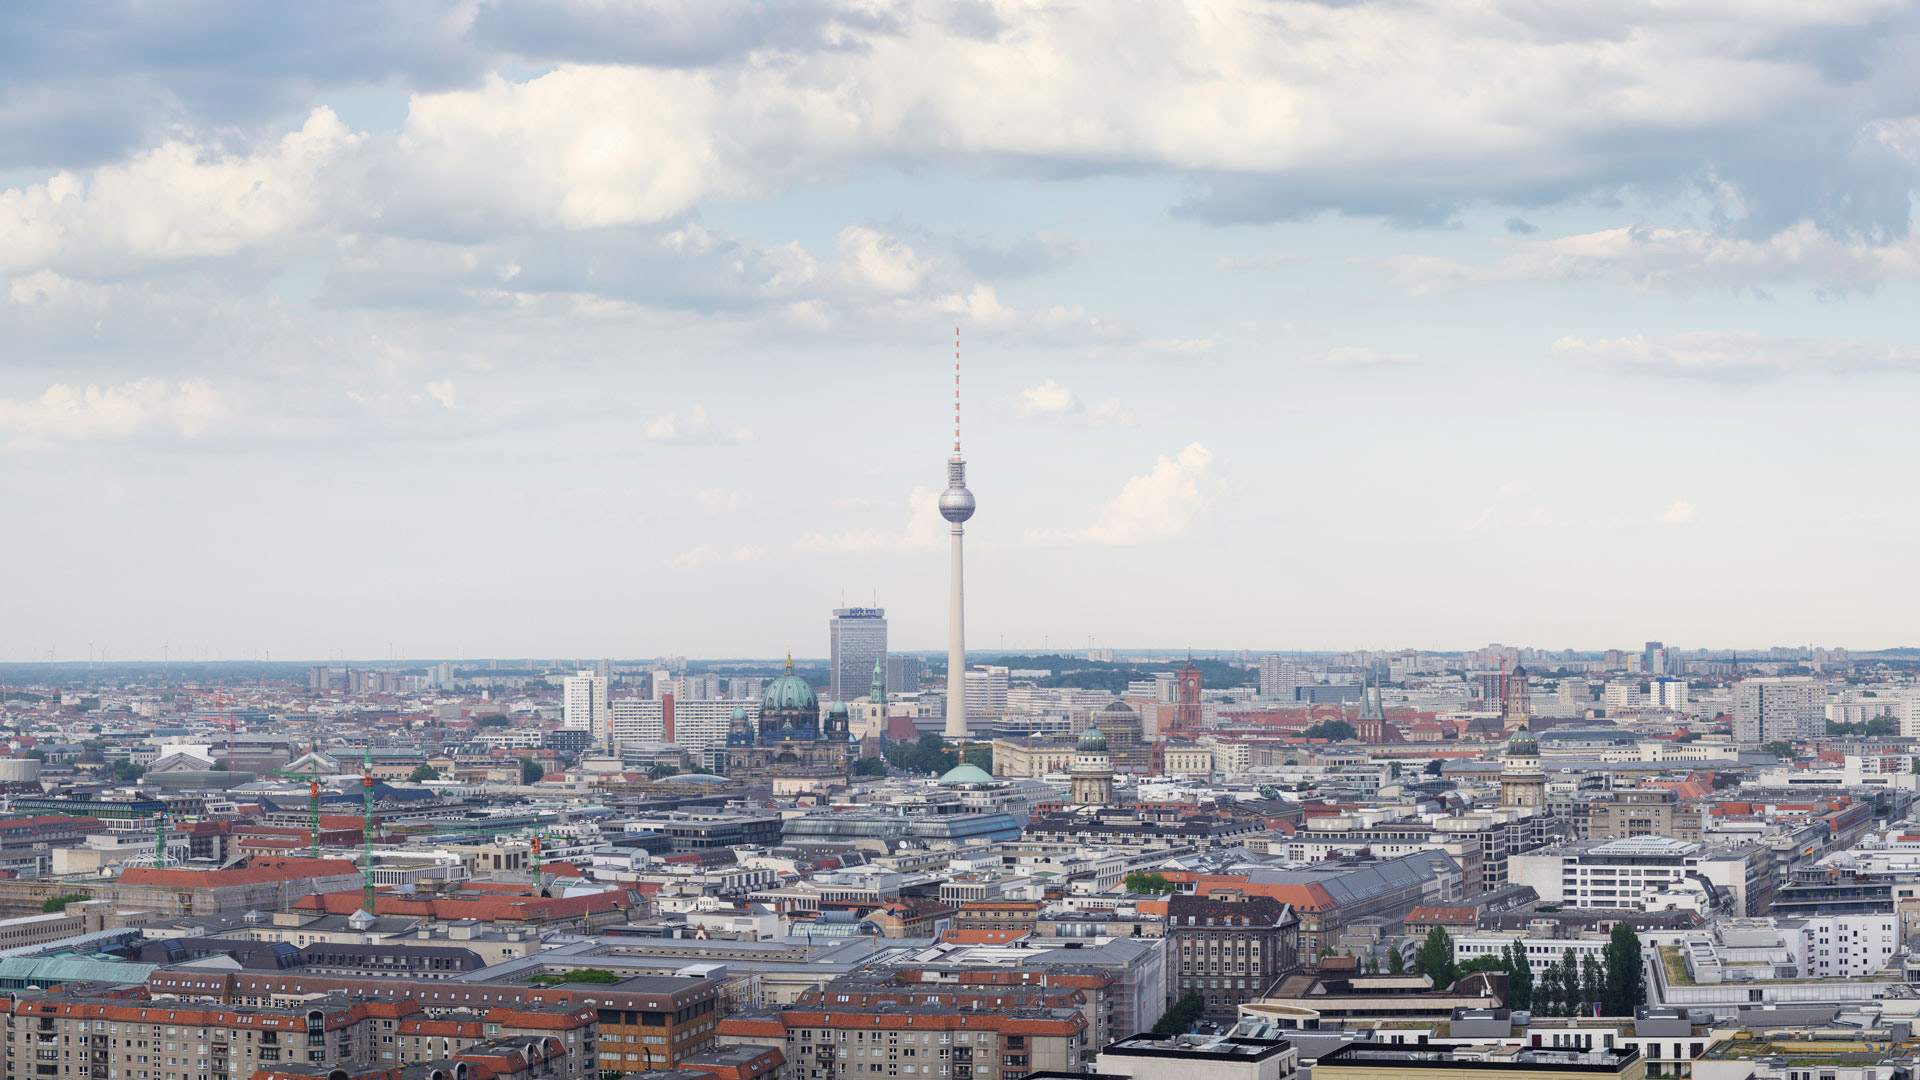 Utsikt över Berlin, med TV-tornet i centrum